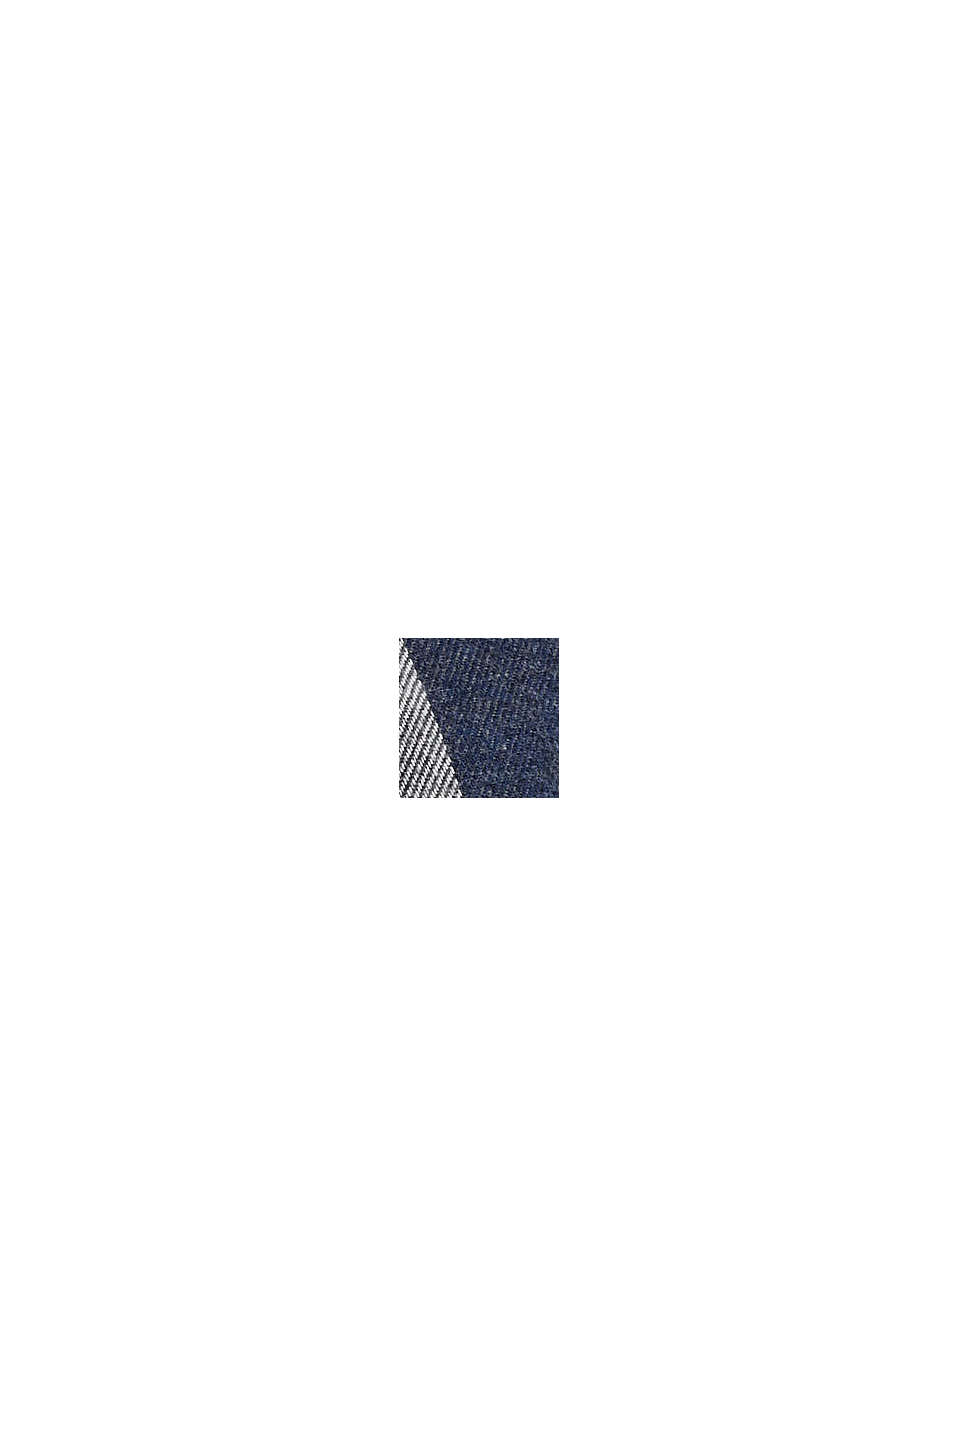 Károvaná flanelová košile z bavlny, DARK BLUE, swatch